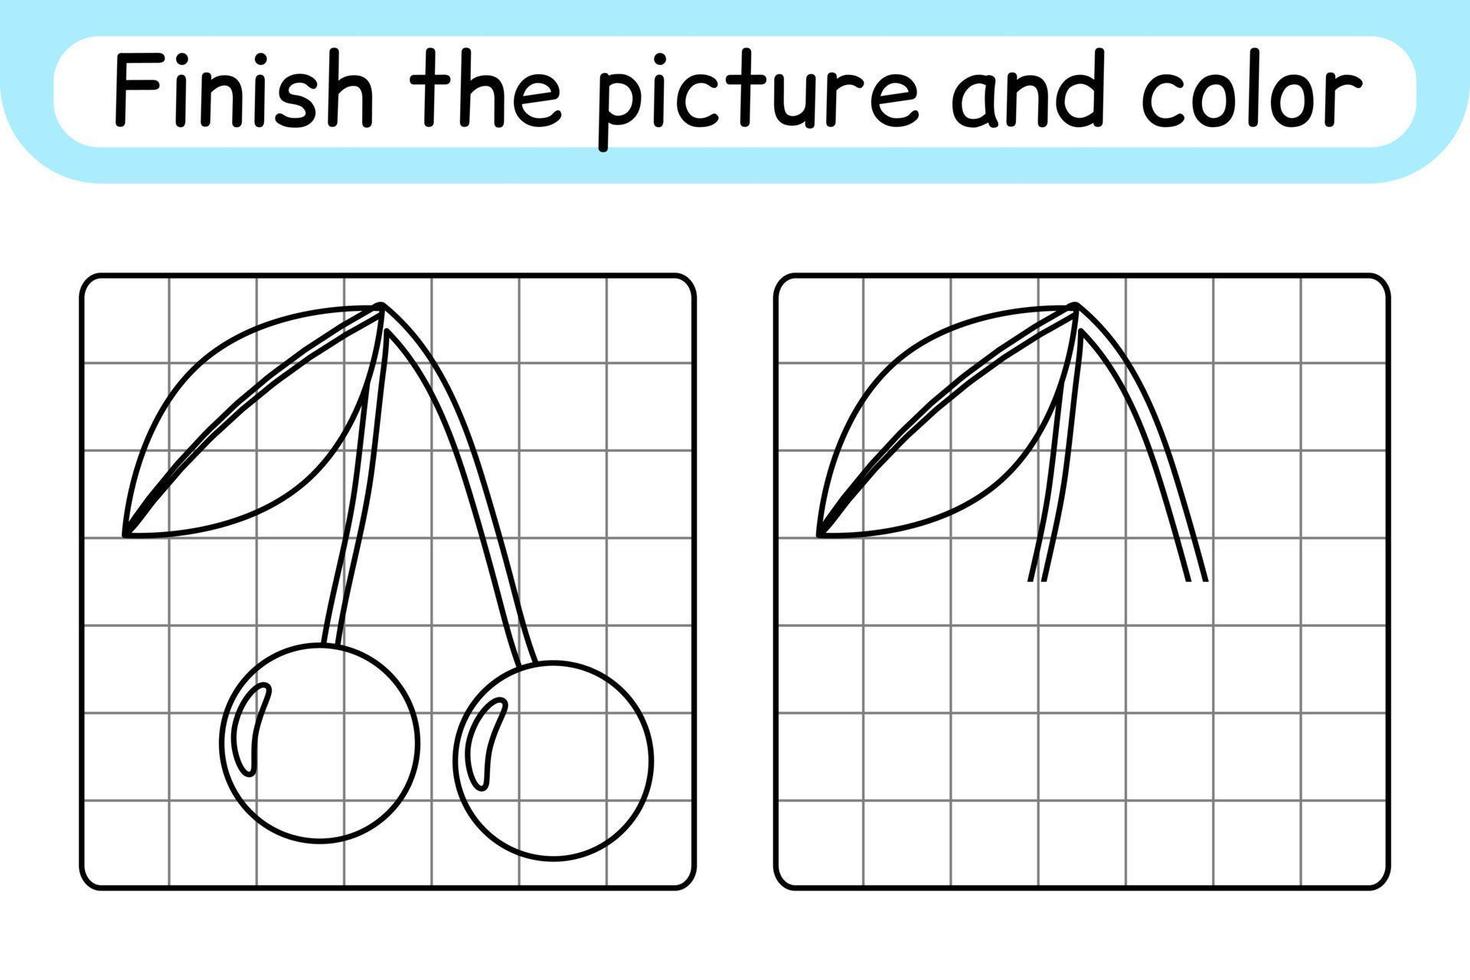 vervollständigen das Bild Kirsche. Kopieren Sie das Bild und die Farbe. beende das Bild. Malbuch. pädagogisches Zeichenübungsspiel für Kinder vektor